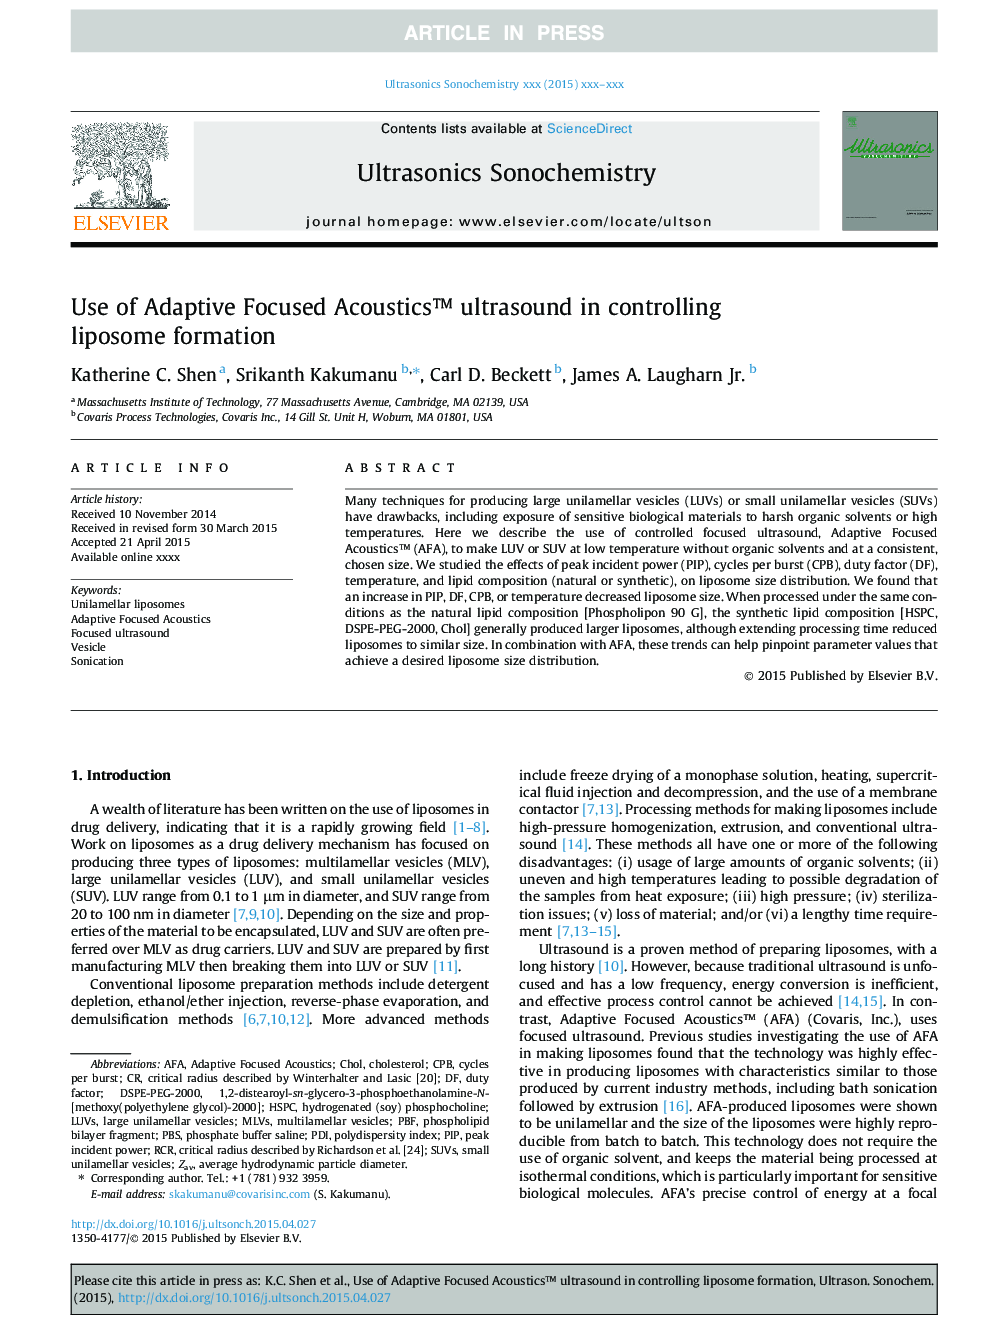 Use of Adaptive Focused Acousticsâ¢ ultrasound in controlling liposome formation